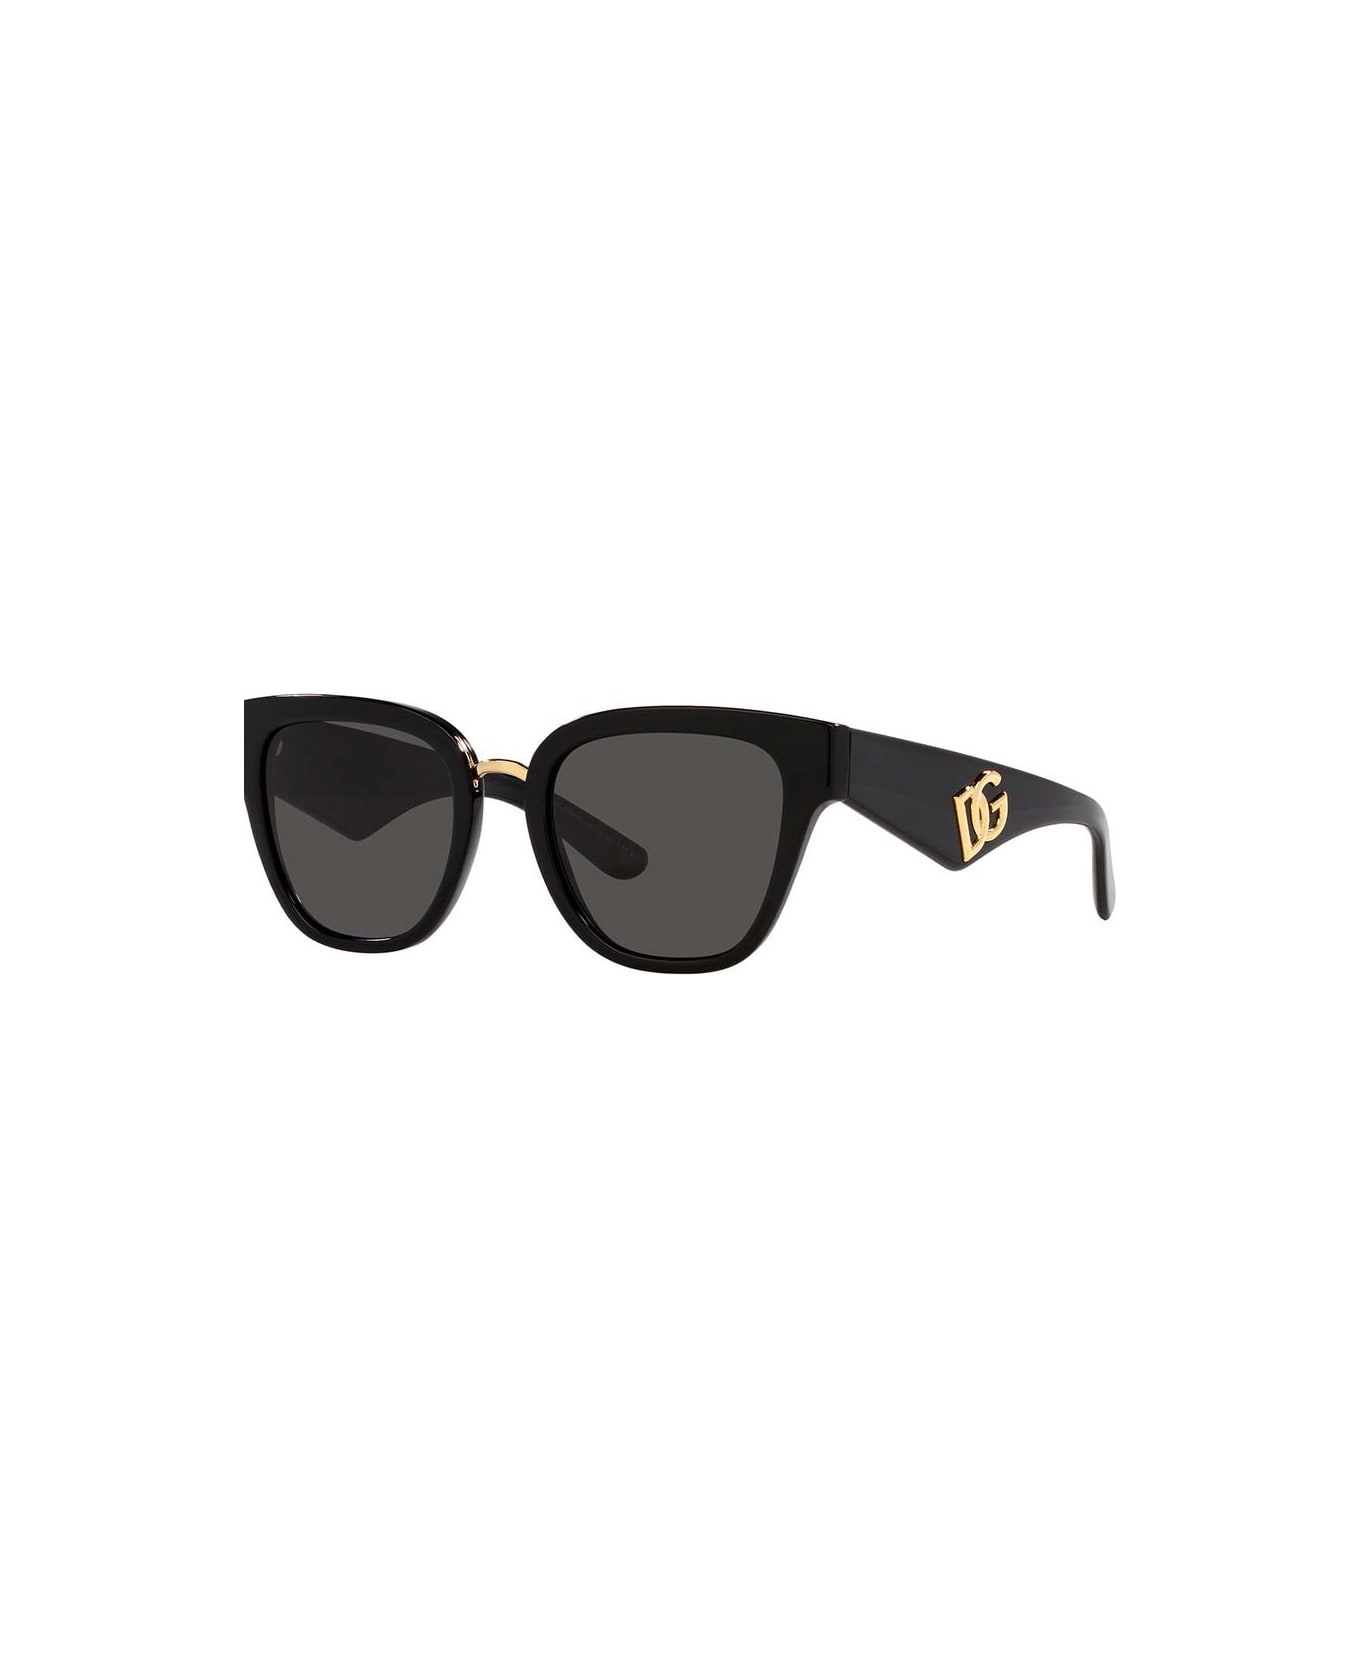 Dolce & Gabbana Eyewear Sunglasses - Nero/Nero